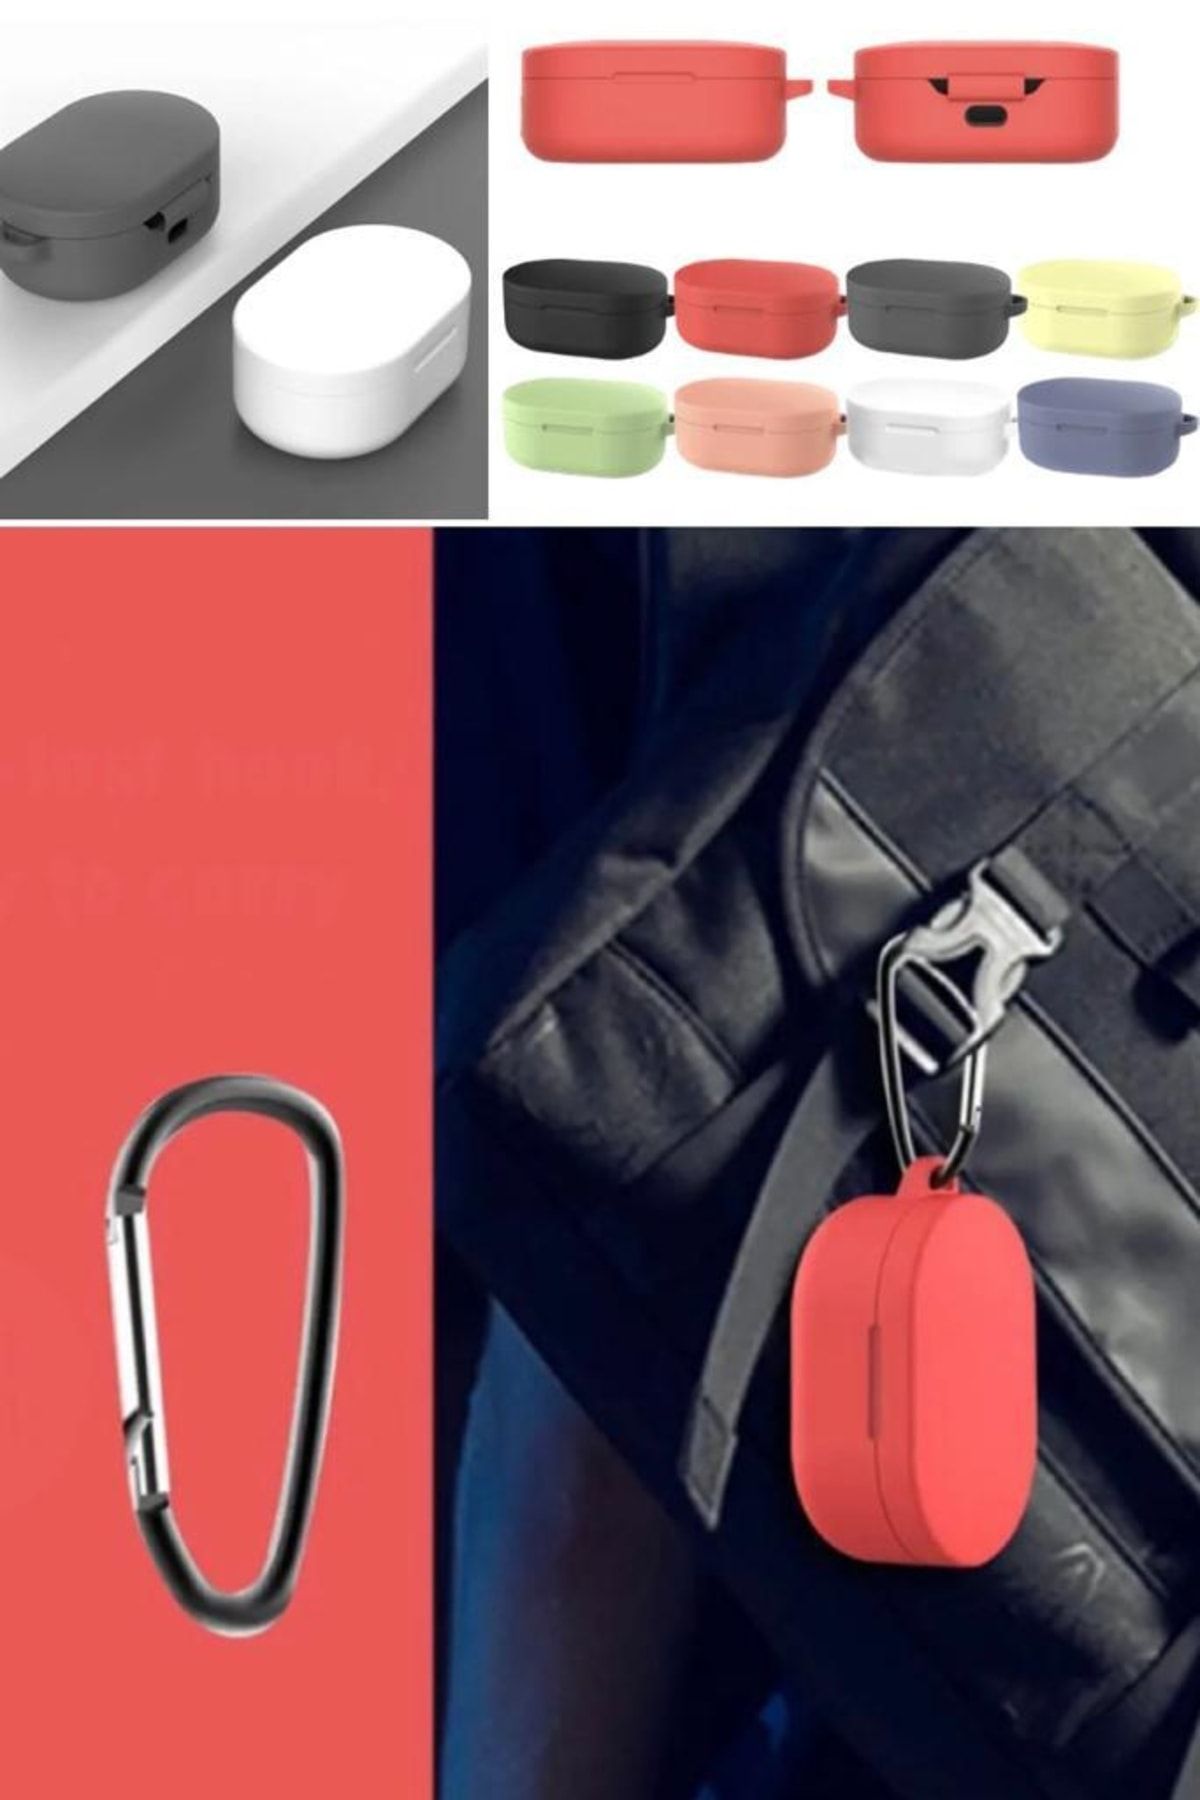 KılıfShop Redmi Buds 4 Lite Case Silicone - Trendyol